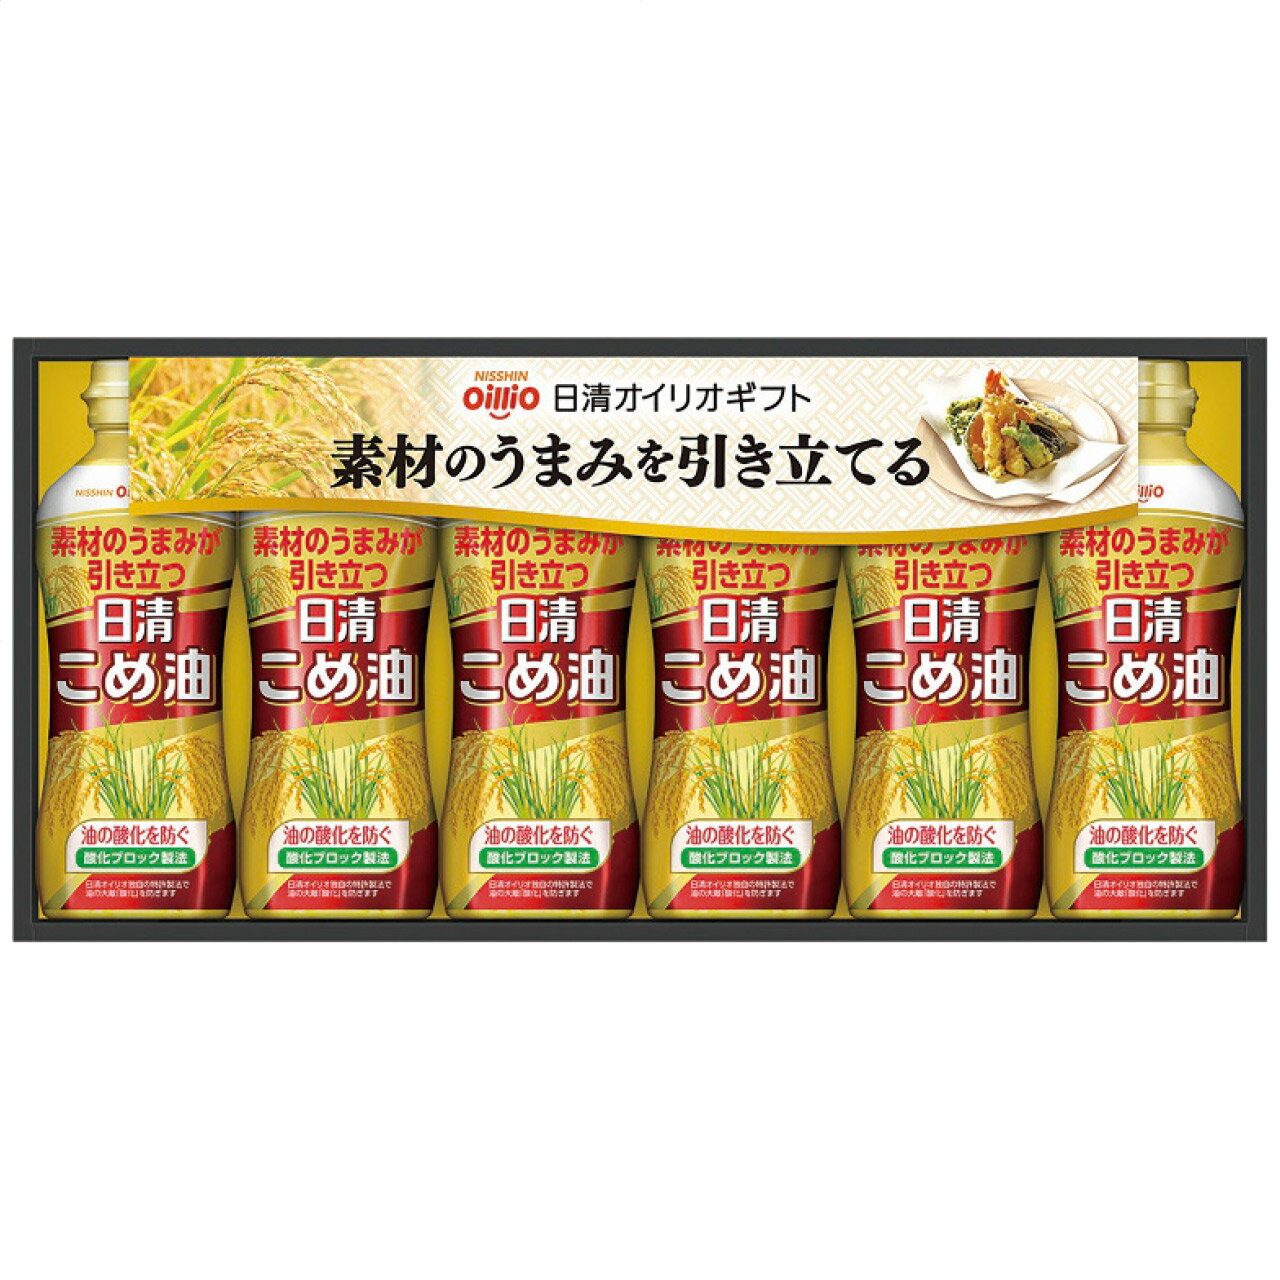 こめ油ギフトセット KM-30A 日清オイリオ 日本製 [APD2246-014]| 油食品 調味料 油